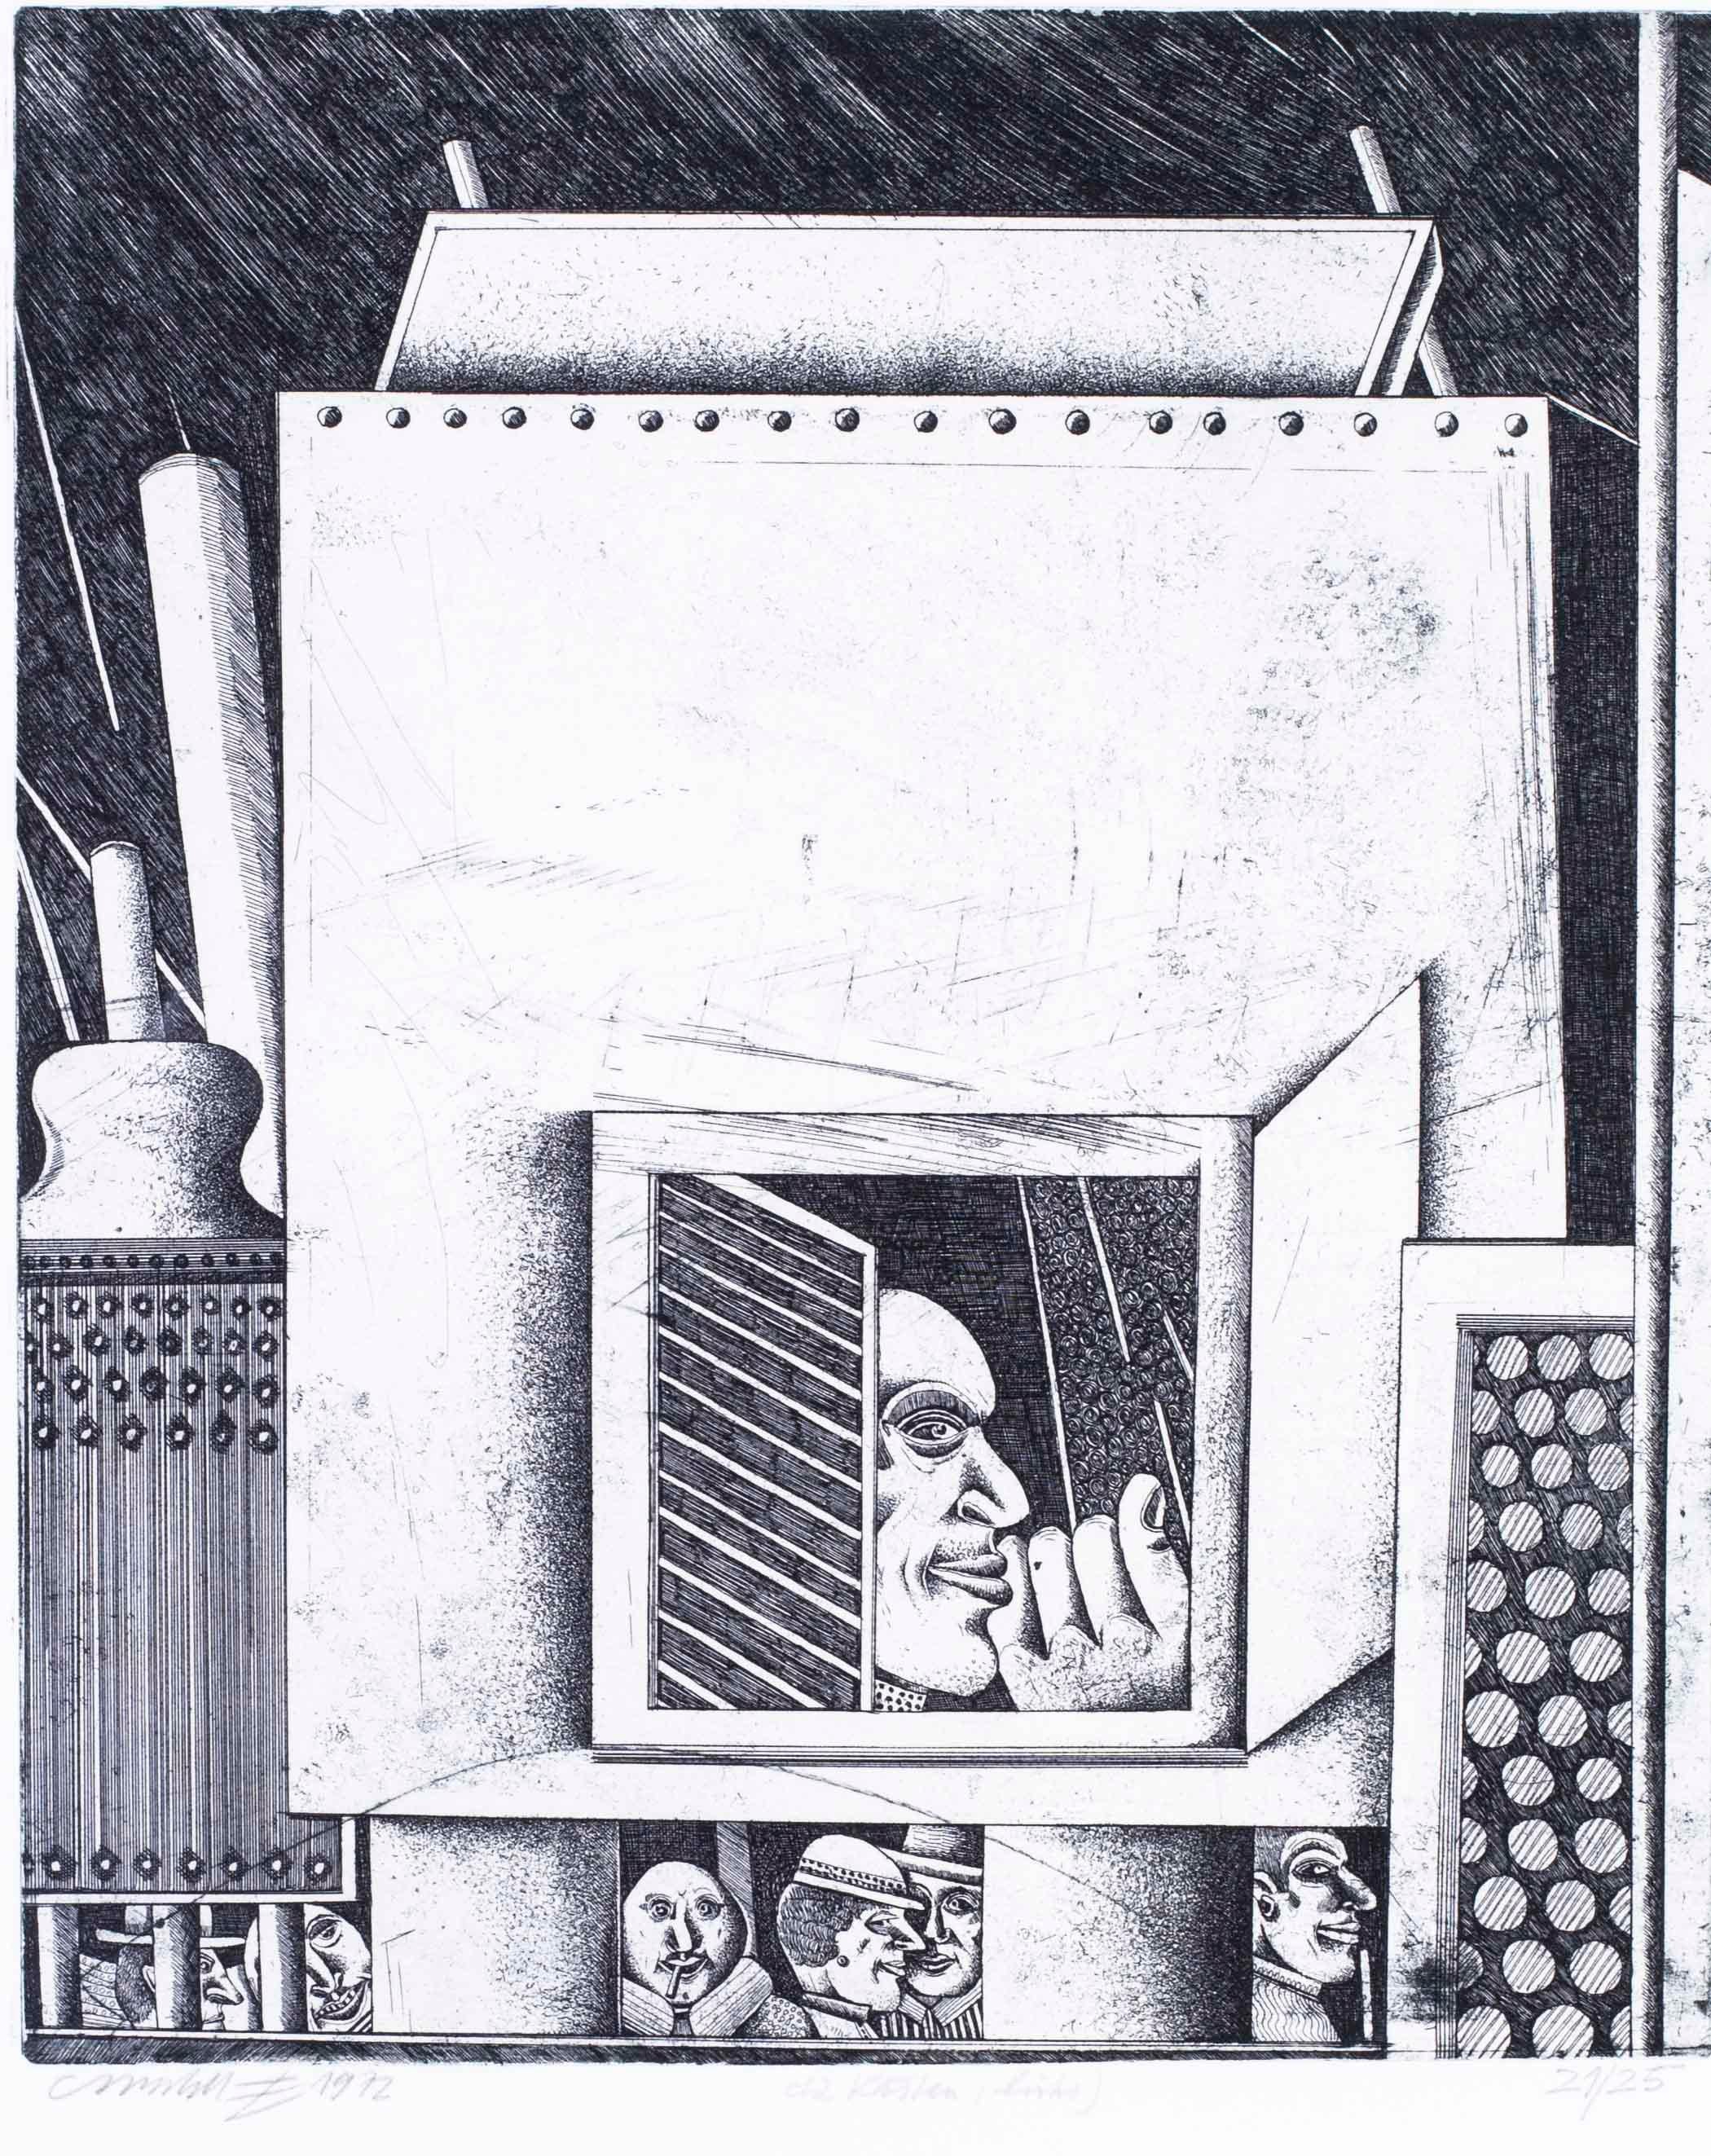 Gravures surréalistes en noir et blanc de l'artiste allemand Christoph Muhil des années 1970 - Print de Unknown